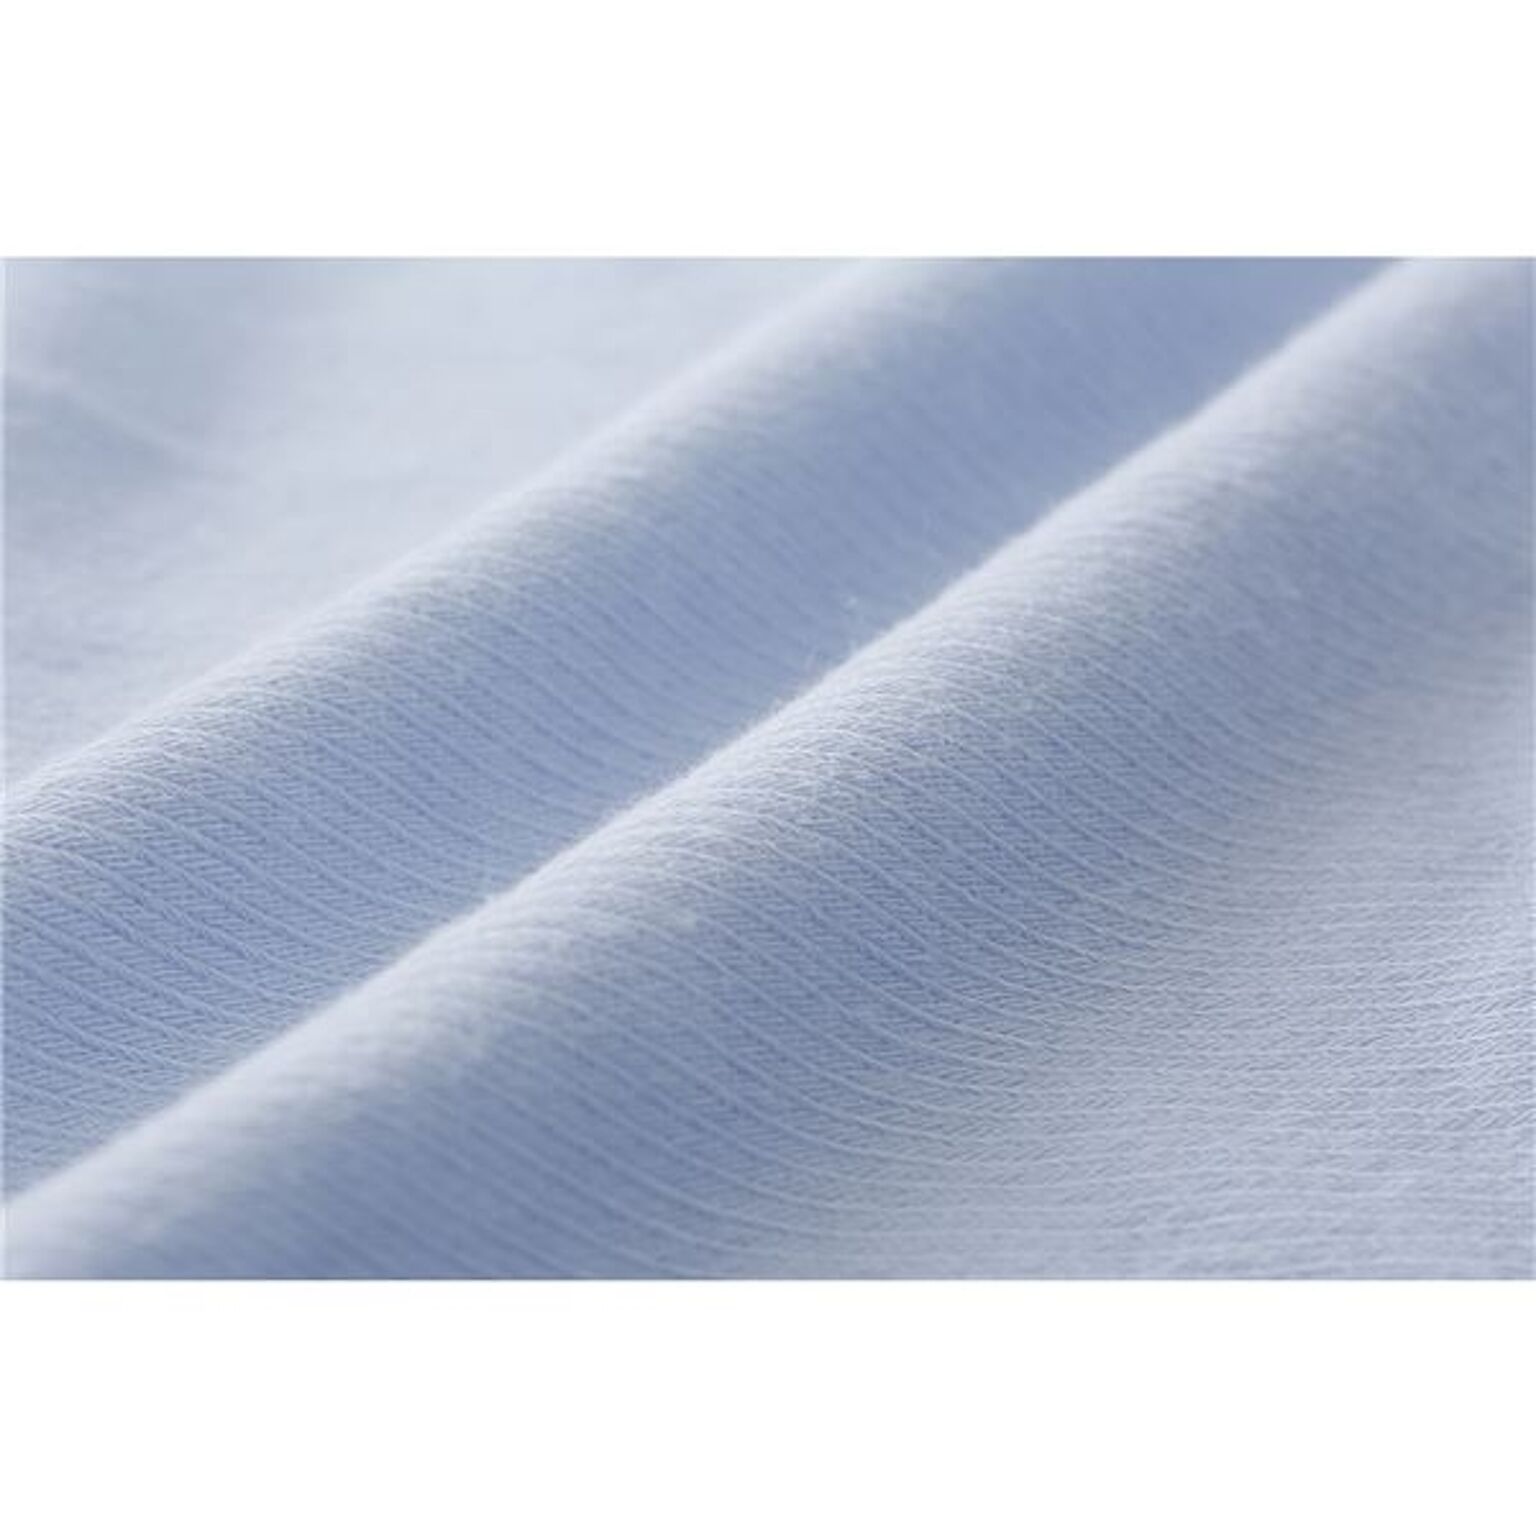 西川 シーツ/寝具 ダブル〜クイーン ブルー 日本製 取付簡単 洗える 綿混 クイックラップシーツ のびのびシーツ送料無料